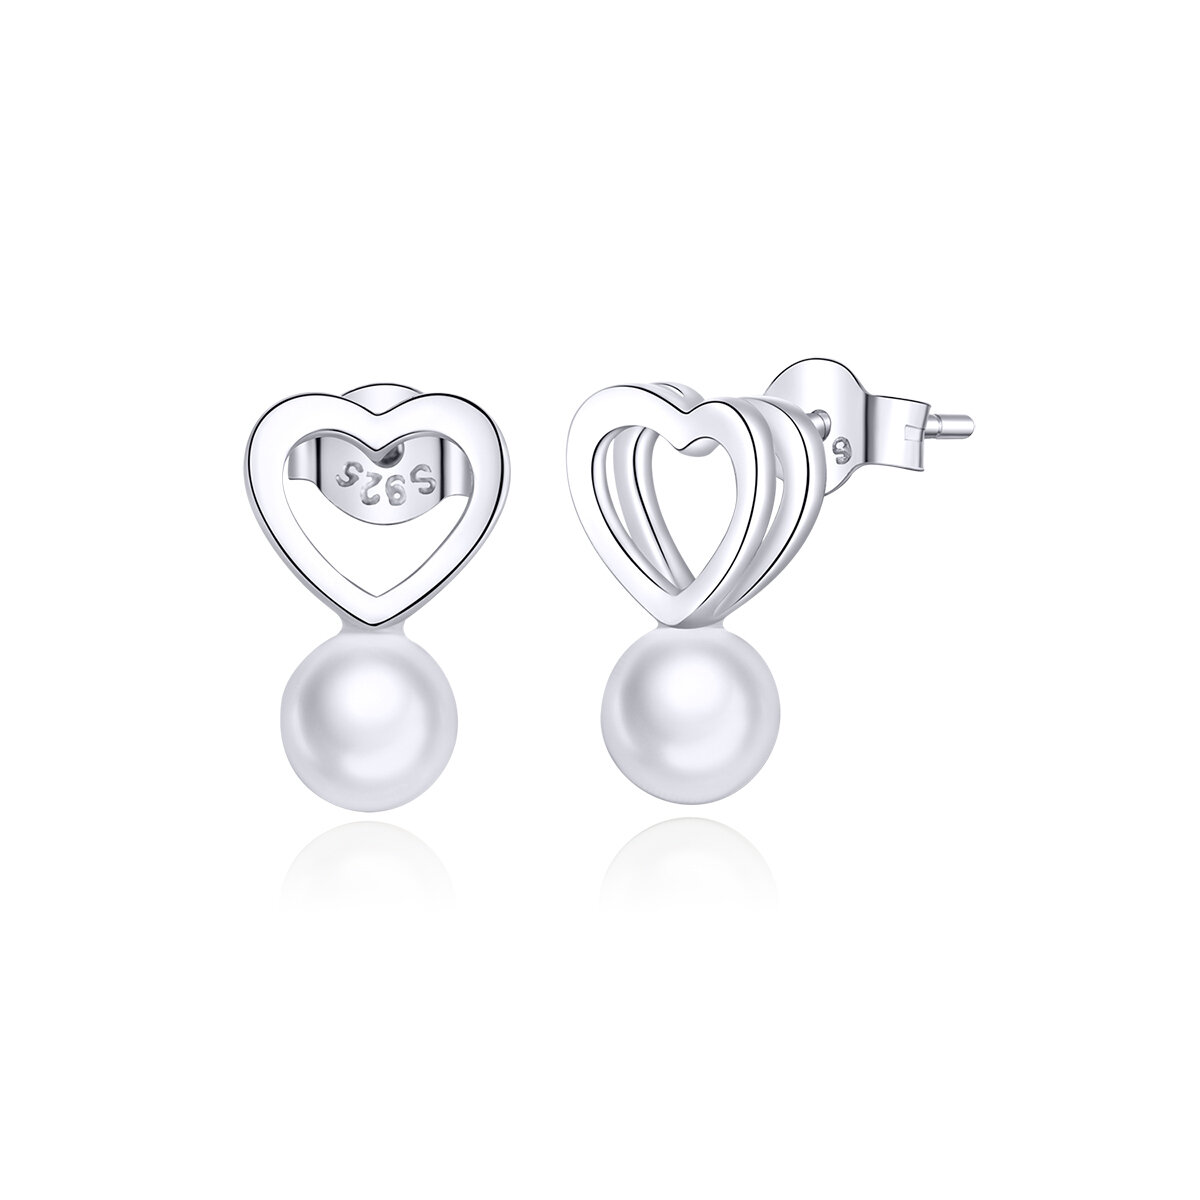 GemKing SCE869 3D heart with Pearl love earrings S925 Sterling Silver Earring